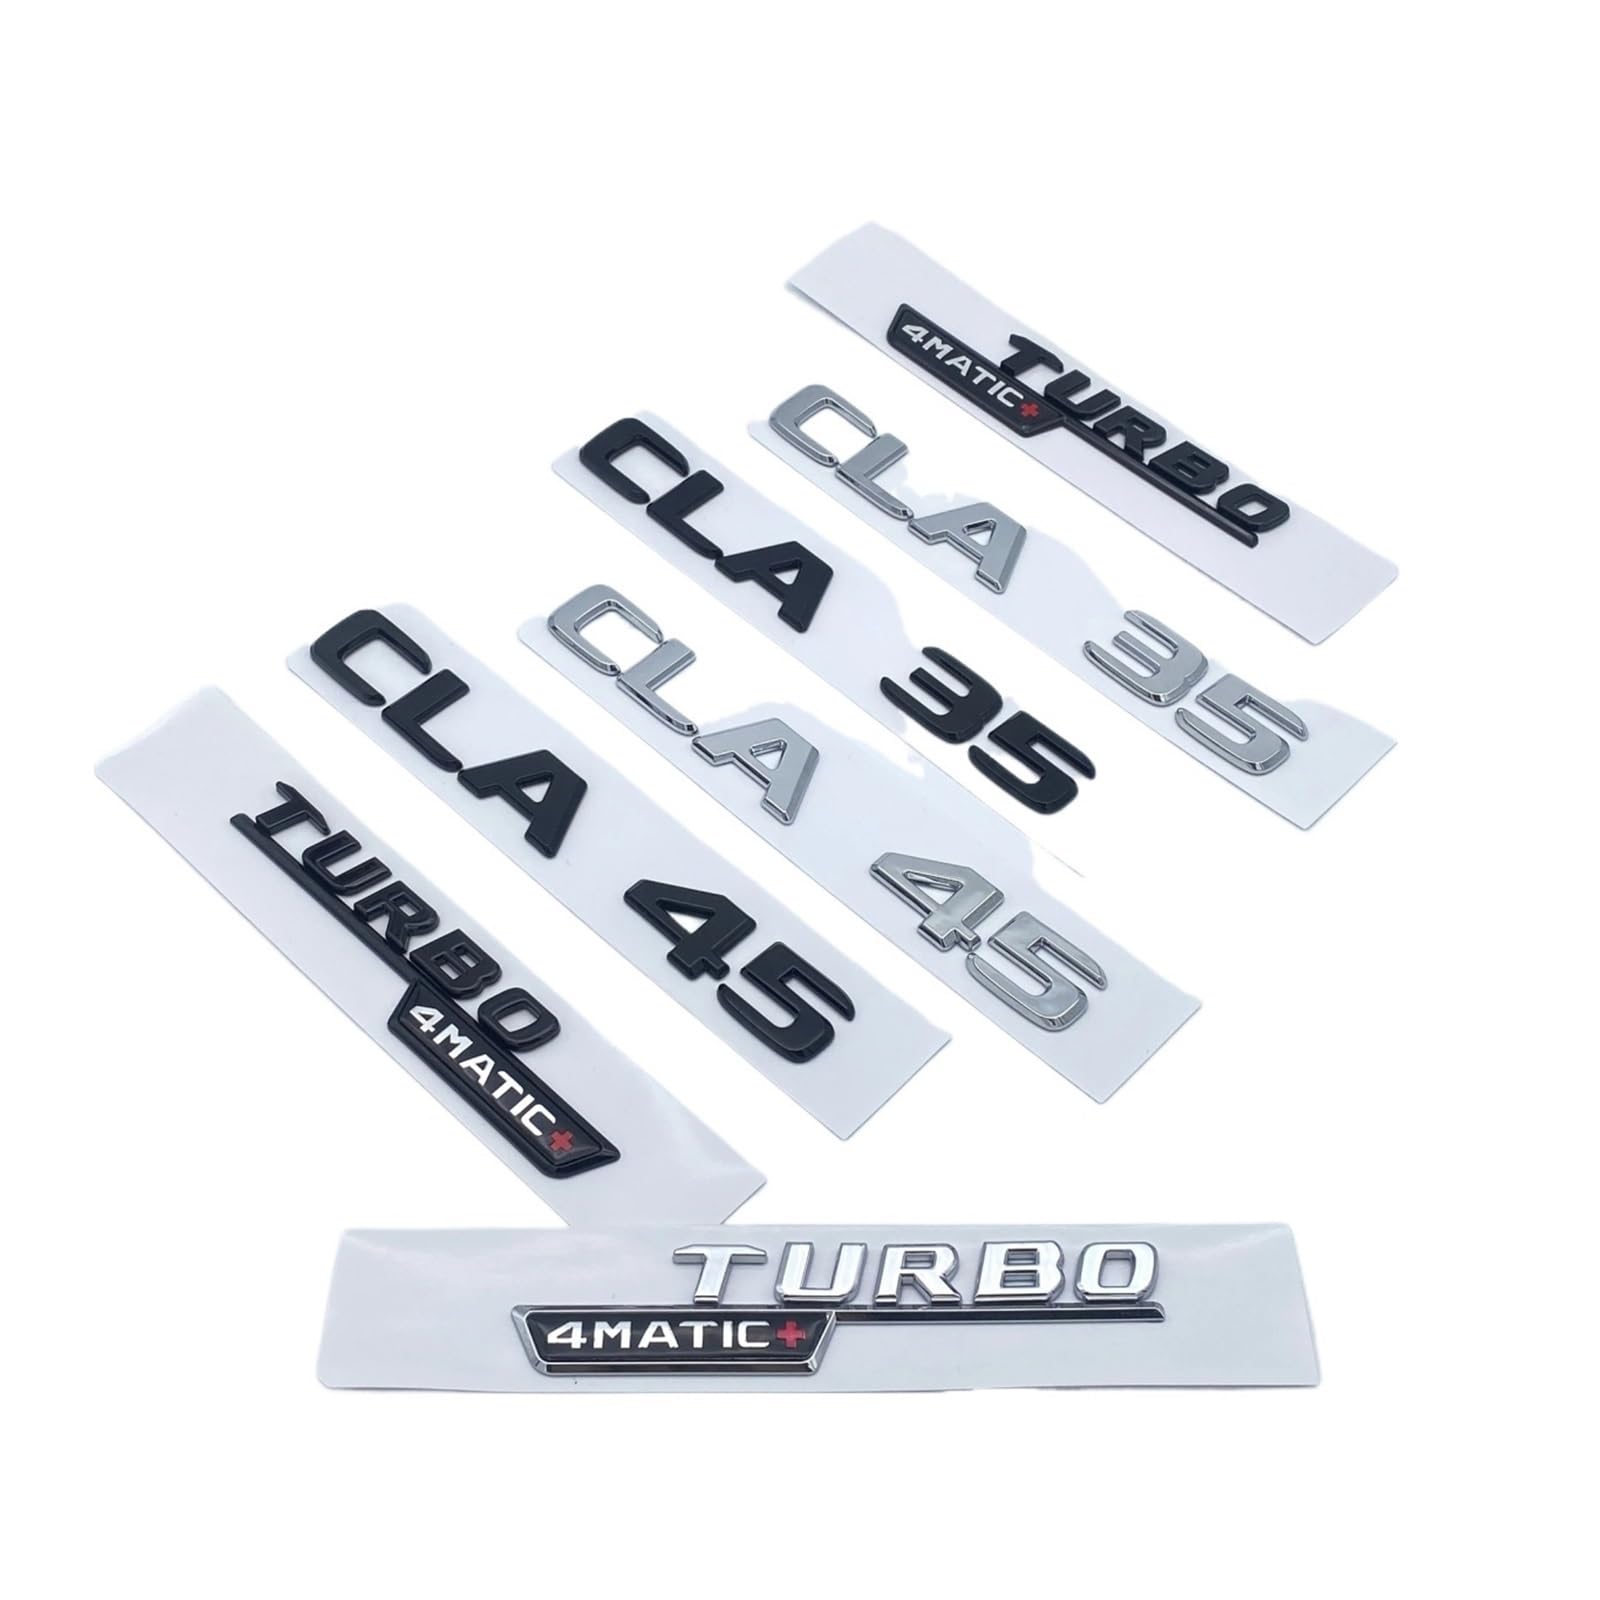 Aqxyju 3D-ABS-Buchstaben in Schwarz und Silber, CLA35, CLA45 Turbo 4matic+, Emblem, kompatibel mit Kofferraum, Heckklappe, C118, W117, Logo-Aufkleber Personalisierte Auto Aufkleber(Glossy black,Turbo4 von Aqxyju